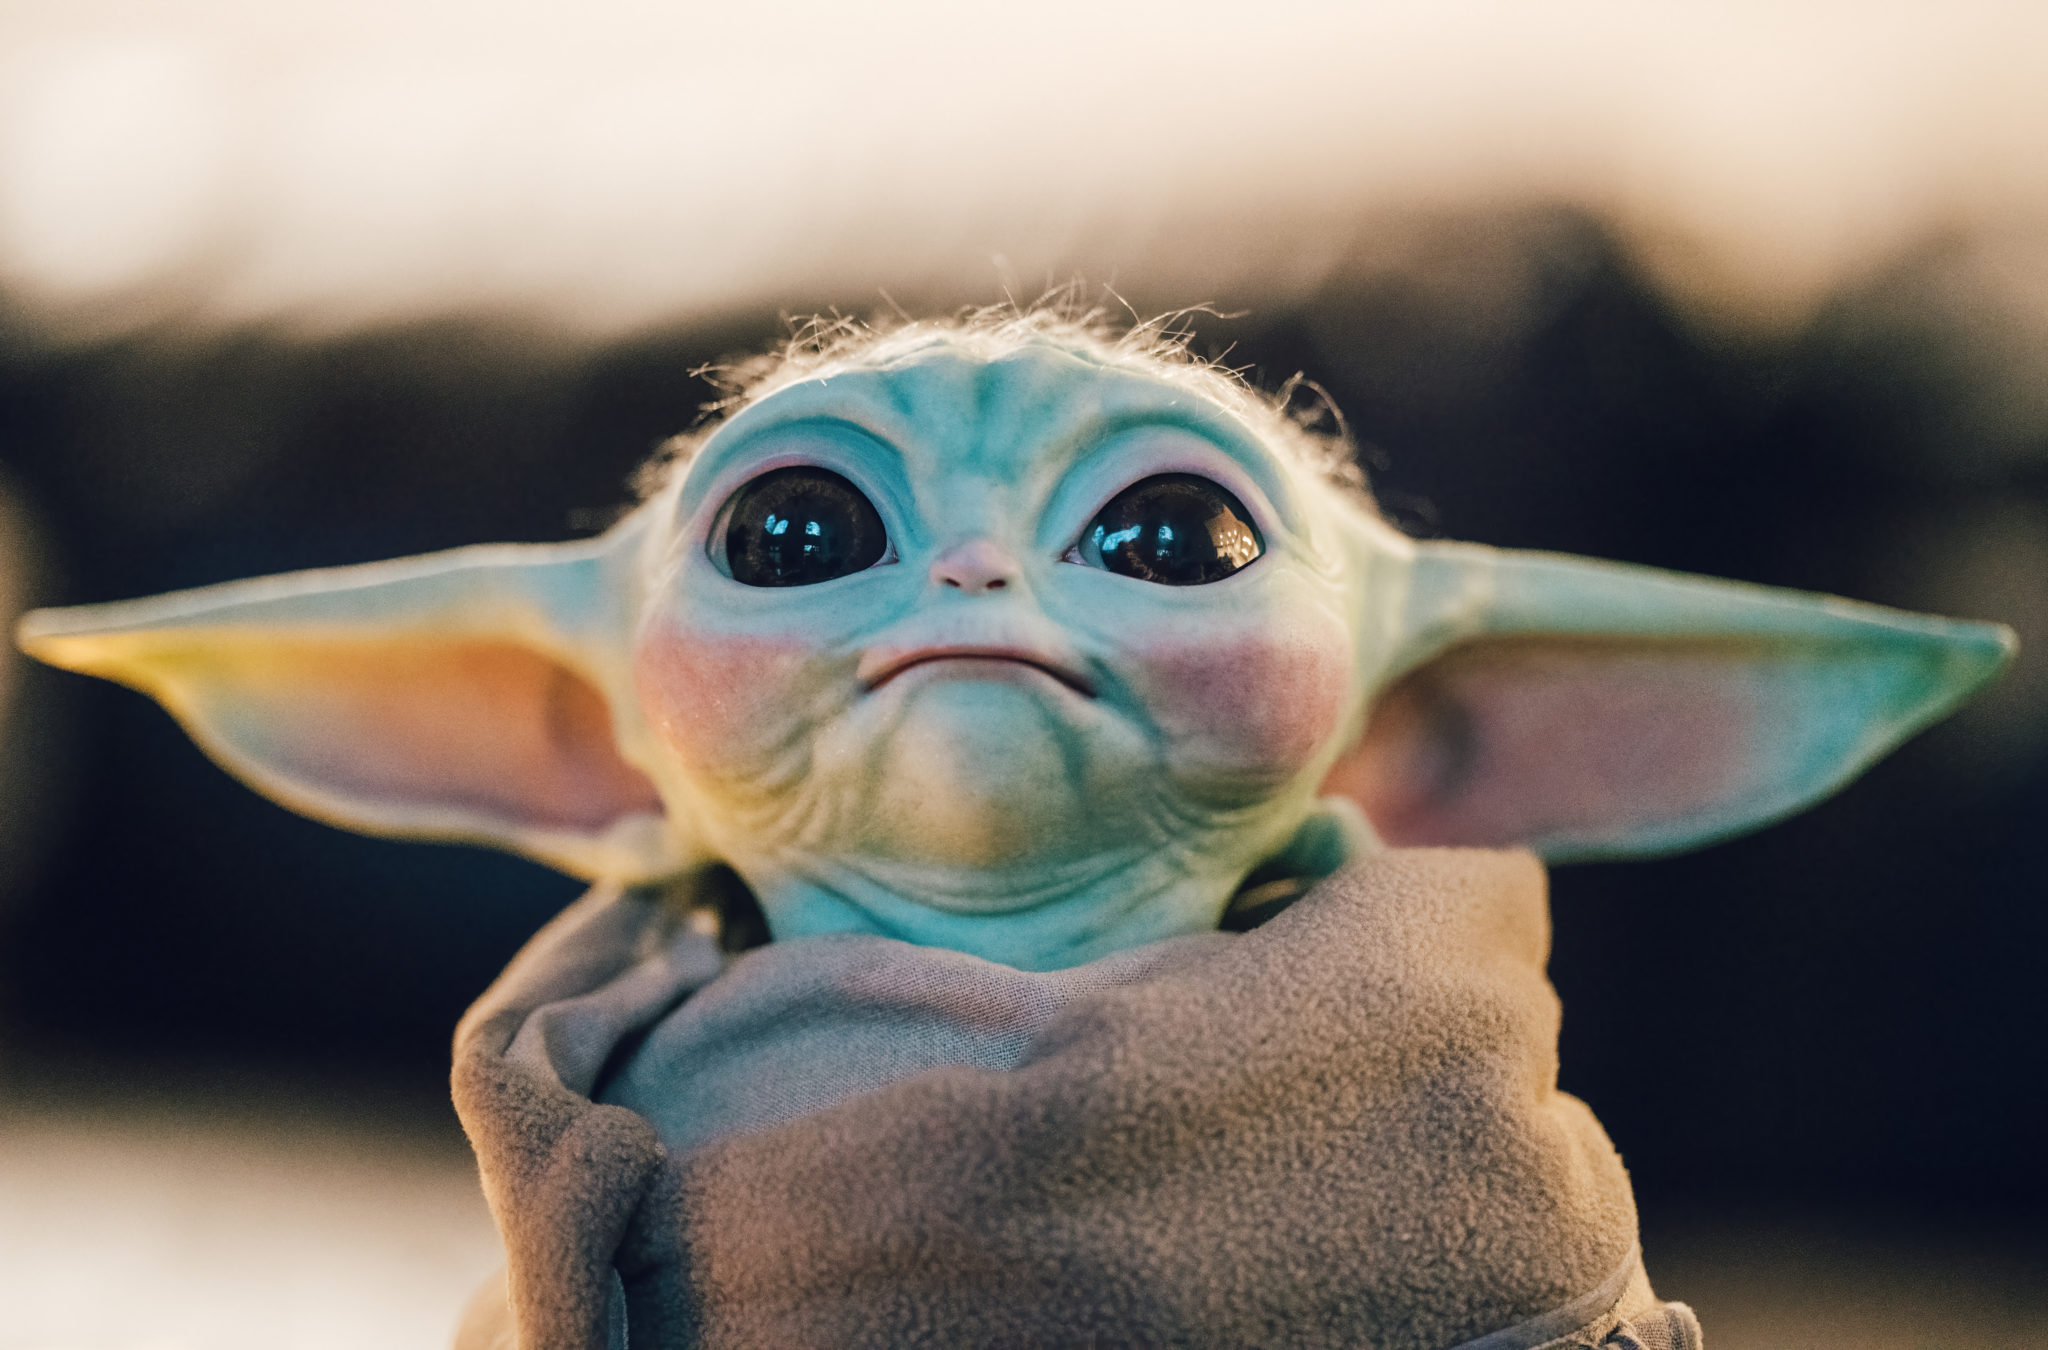 Il est désormais possible d'avoir son propre « Baby Yoda » chez soi